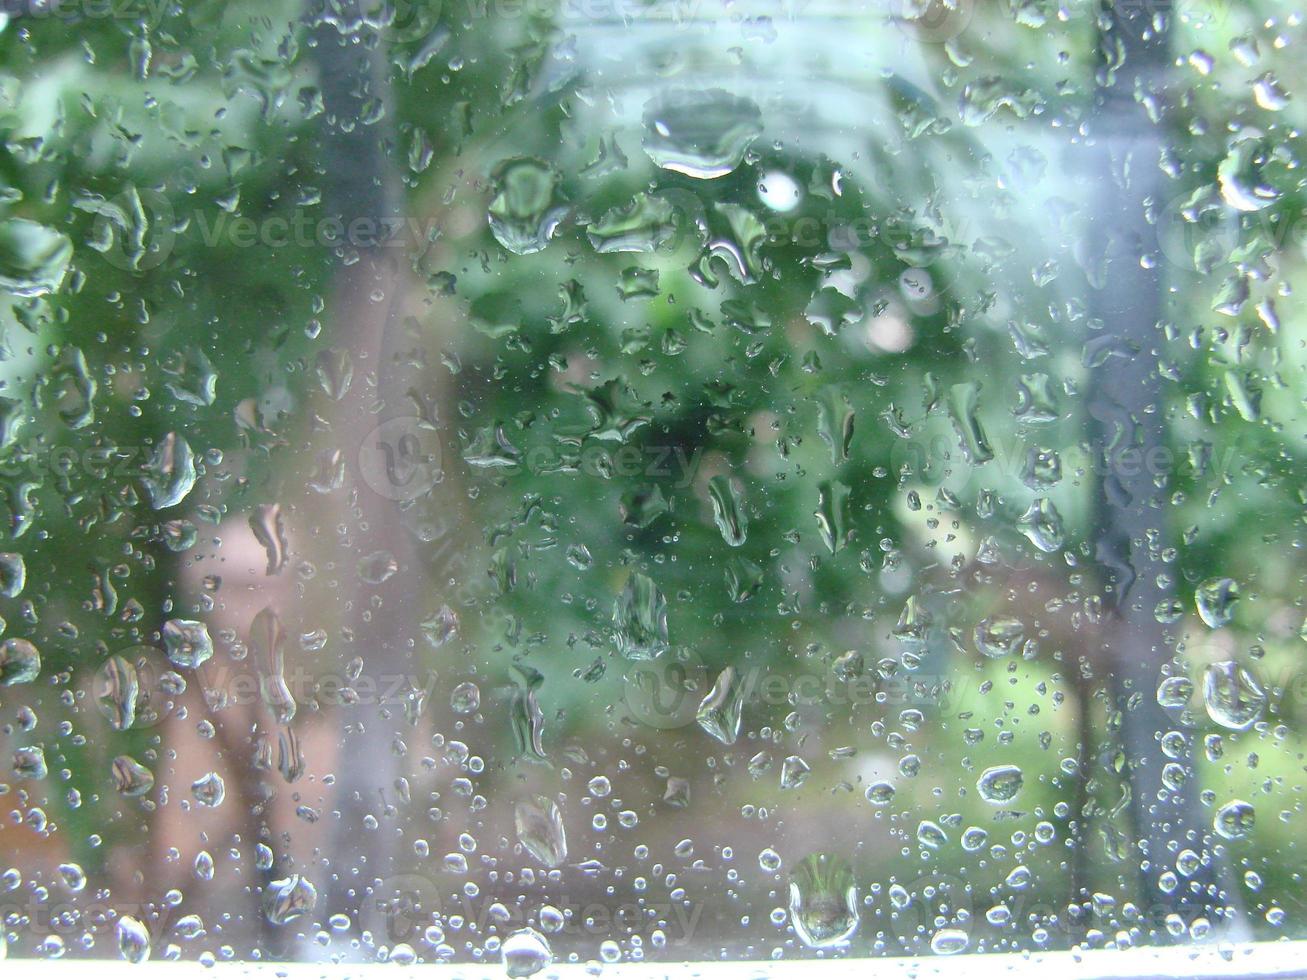 Regentage Regentropfen auf der Fensteroberfläche foto